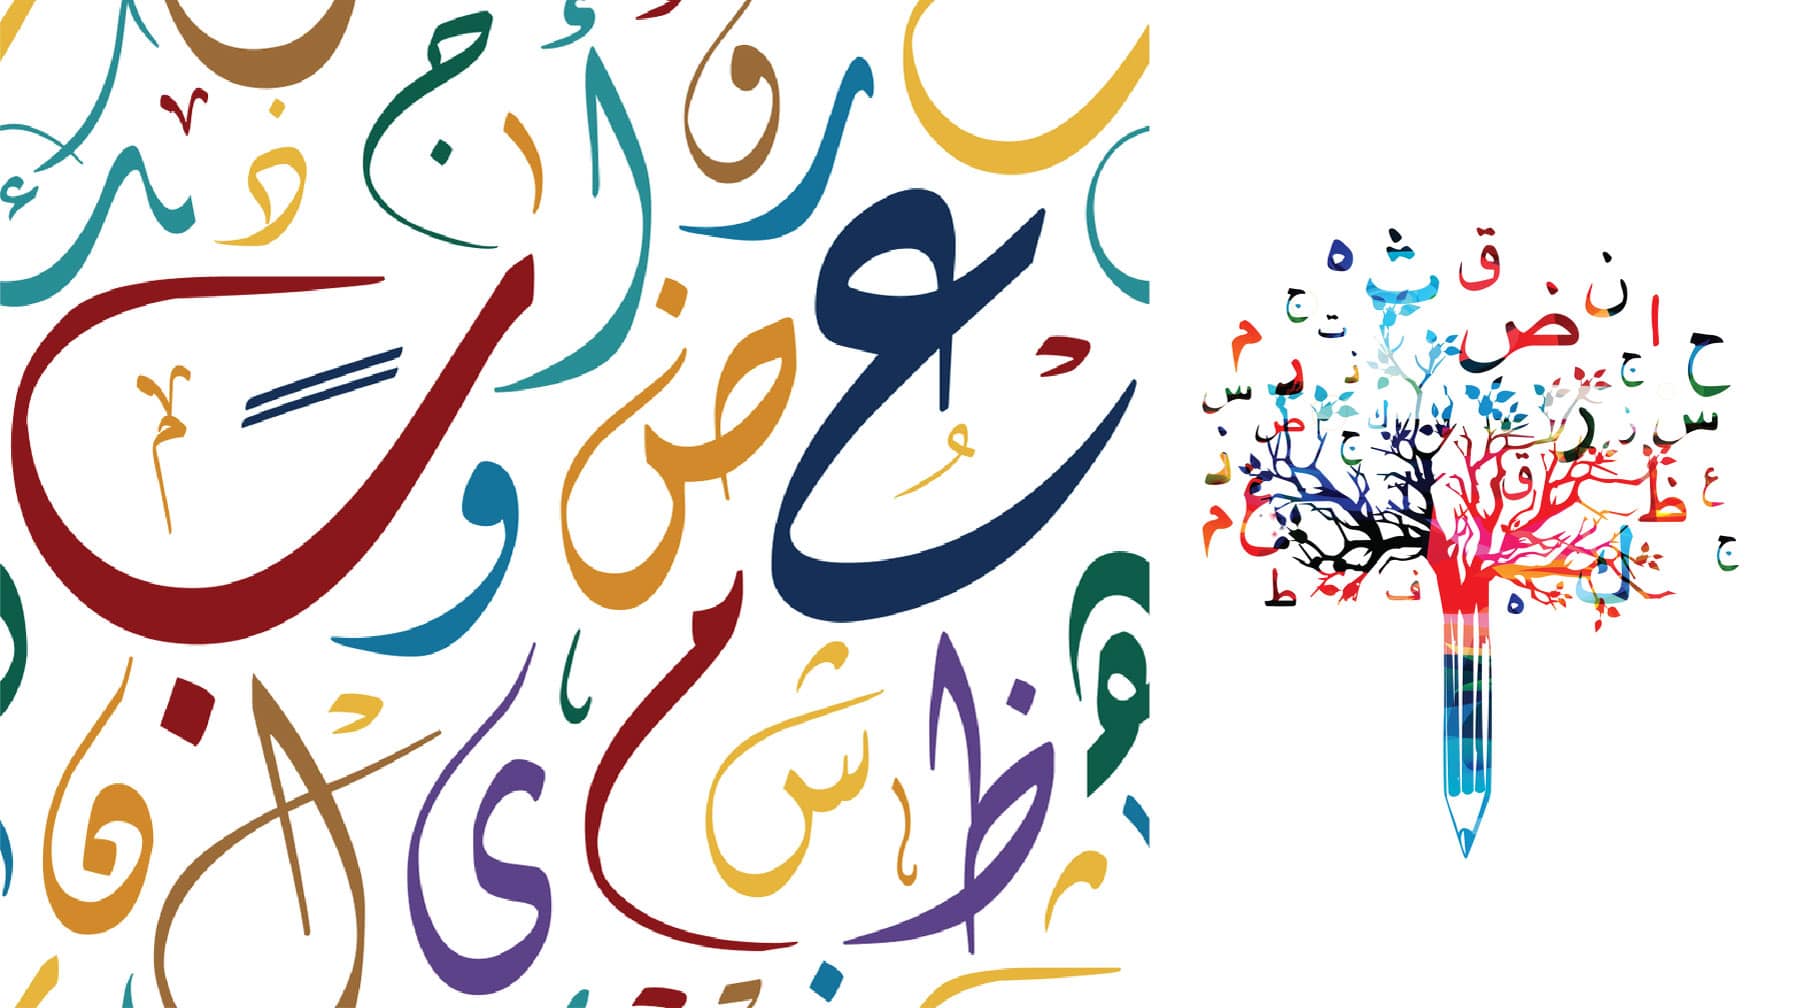 أوراق عمل درس الجملة الاسمية والفعلية لغة عربية الصف الخامس